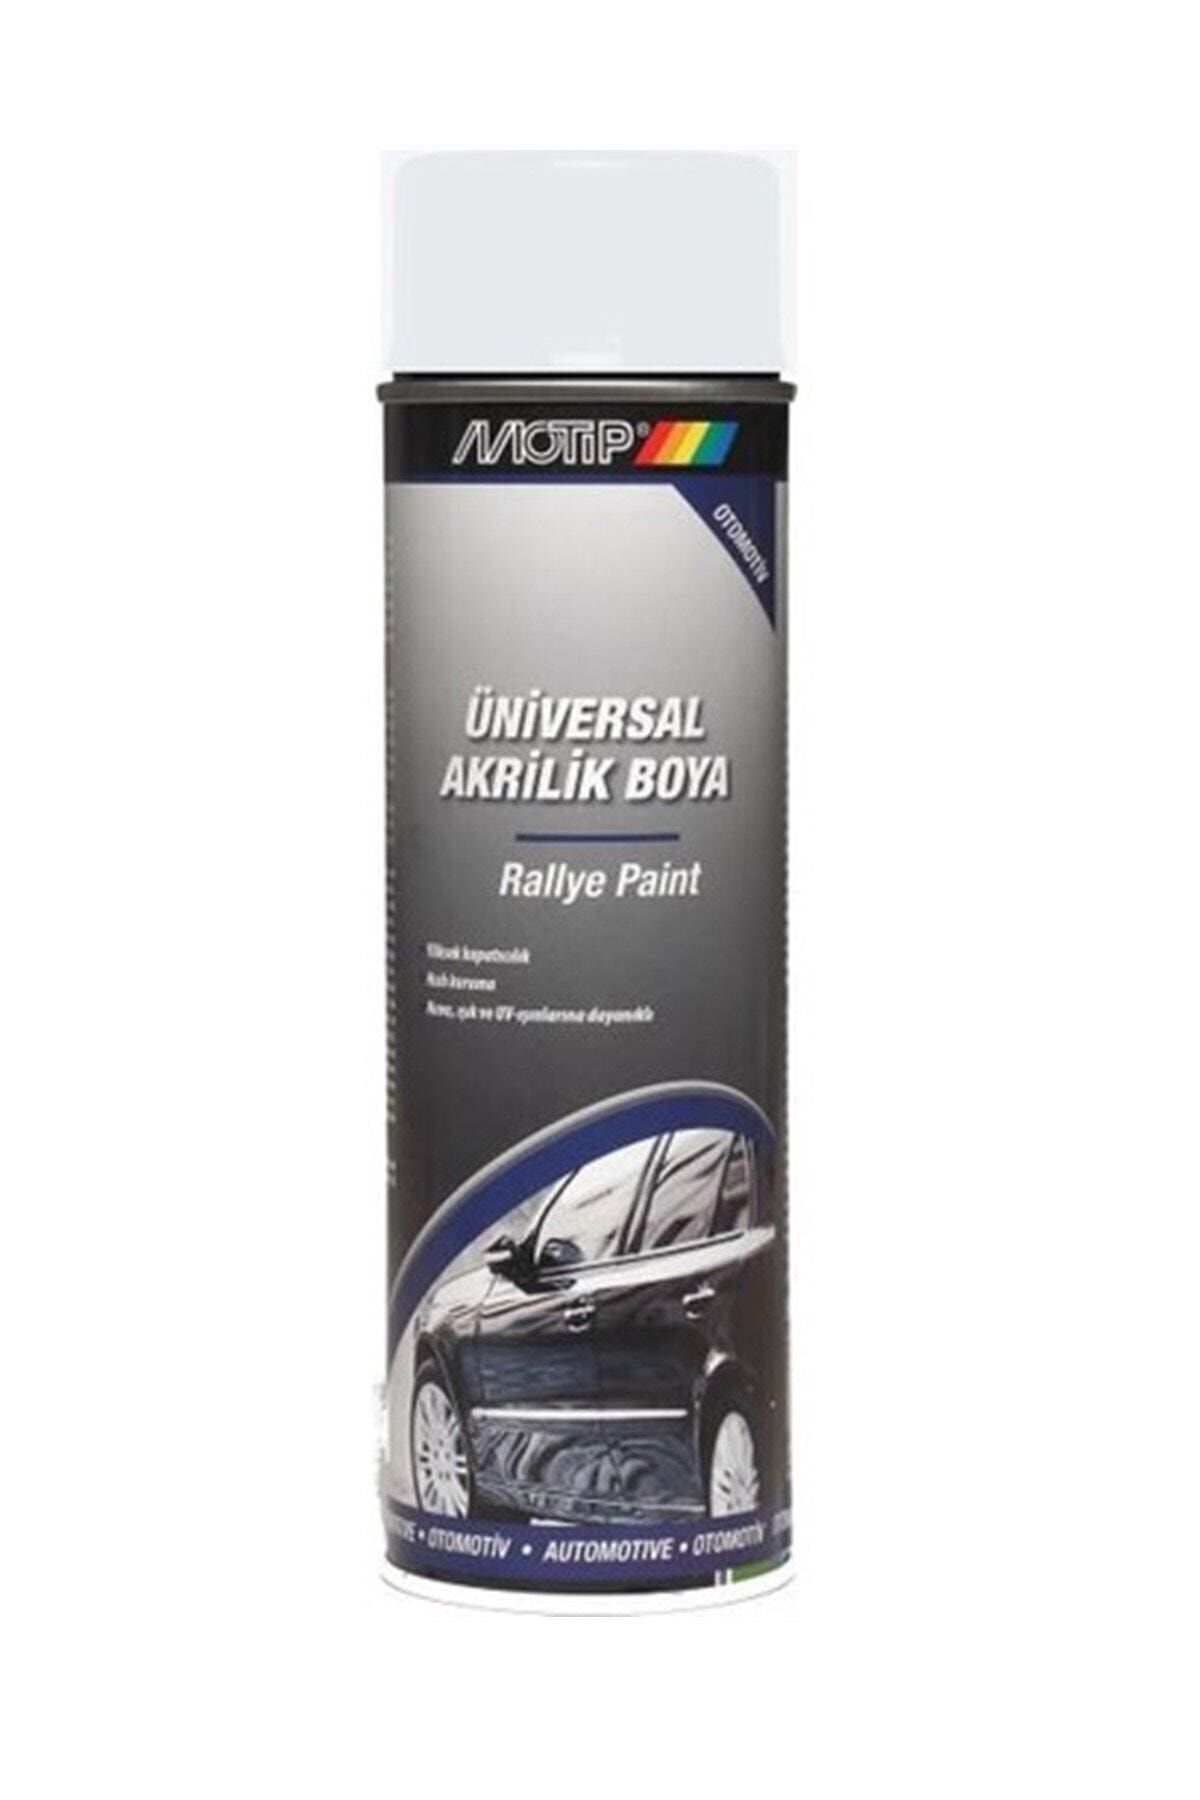 Motip Universal Akrilik Boya Parlak Beyaz 500ml